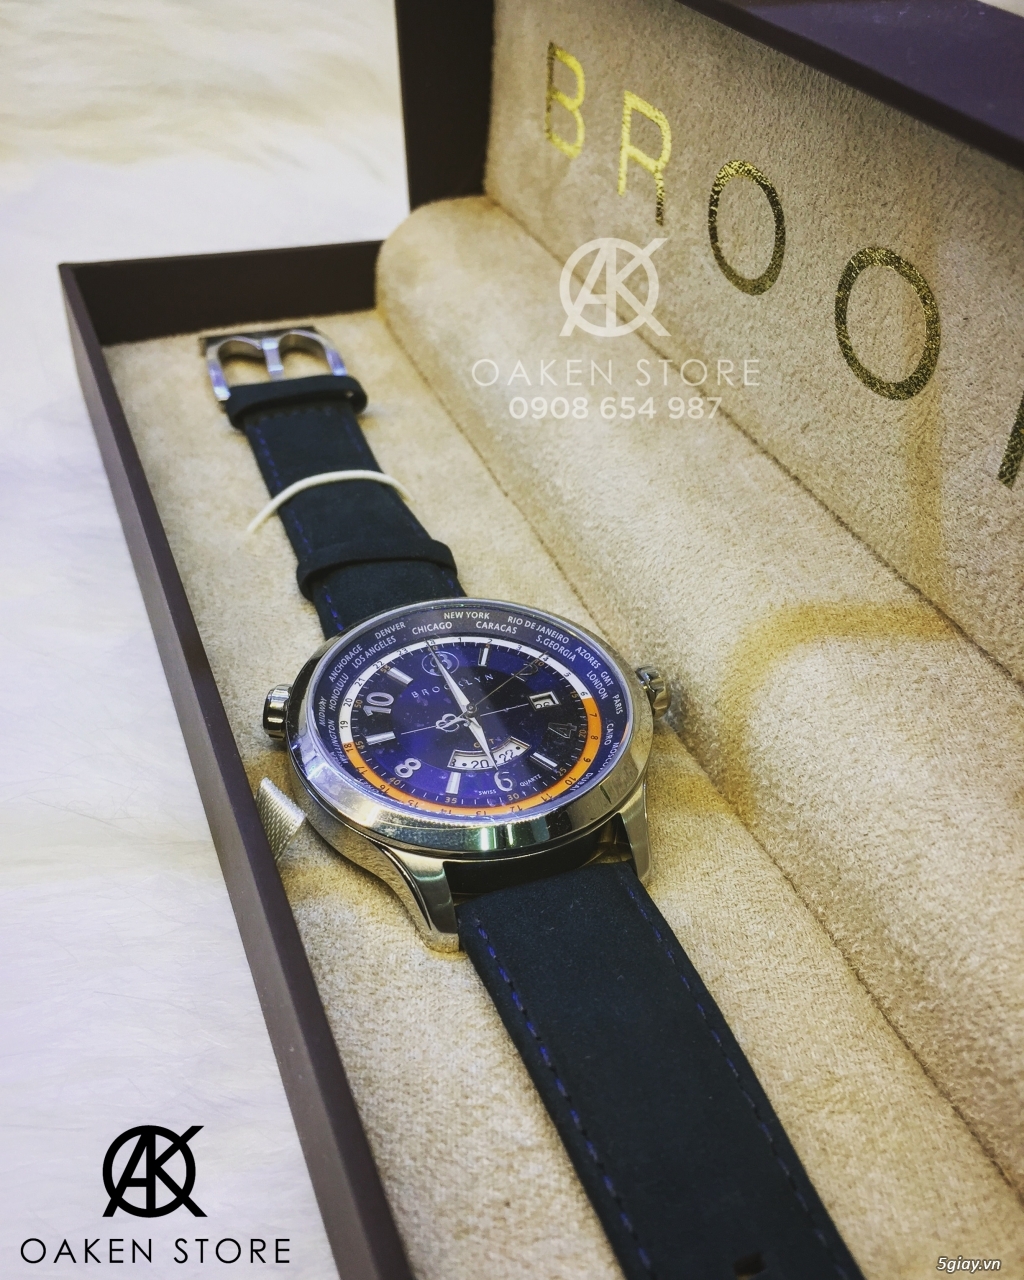 Oaken Store - Đồng hồ chính hãng xách tay giá tốt - 29